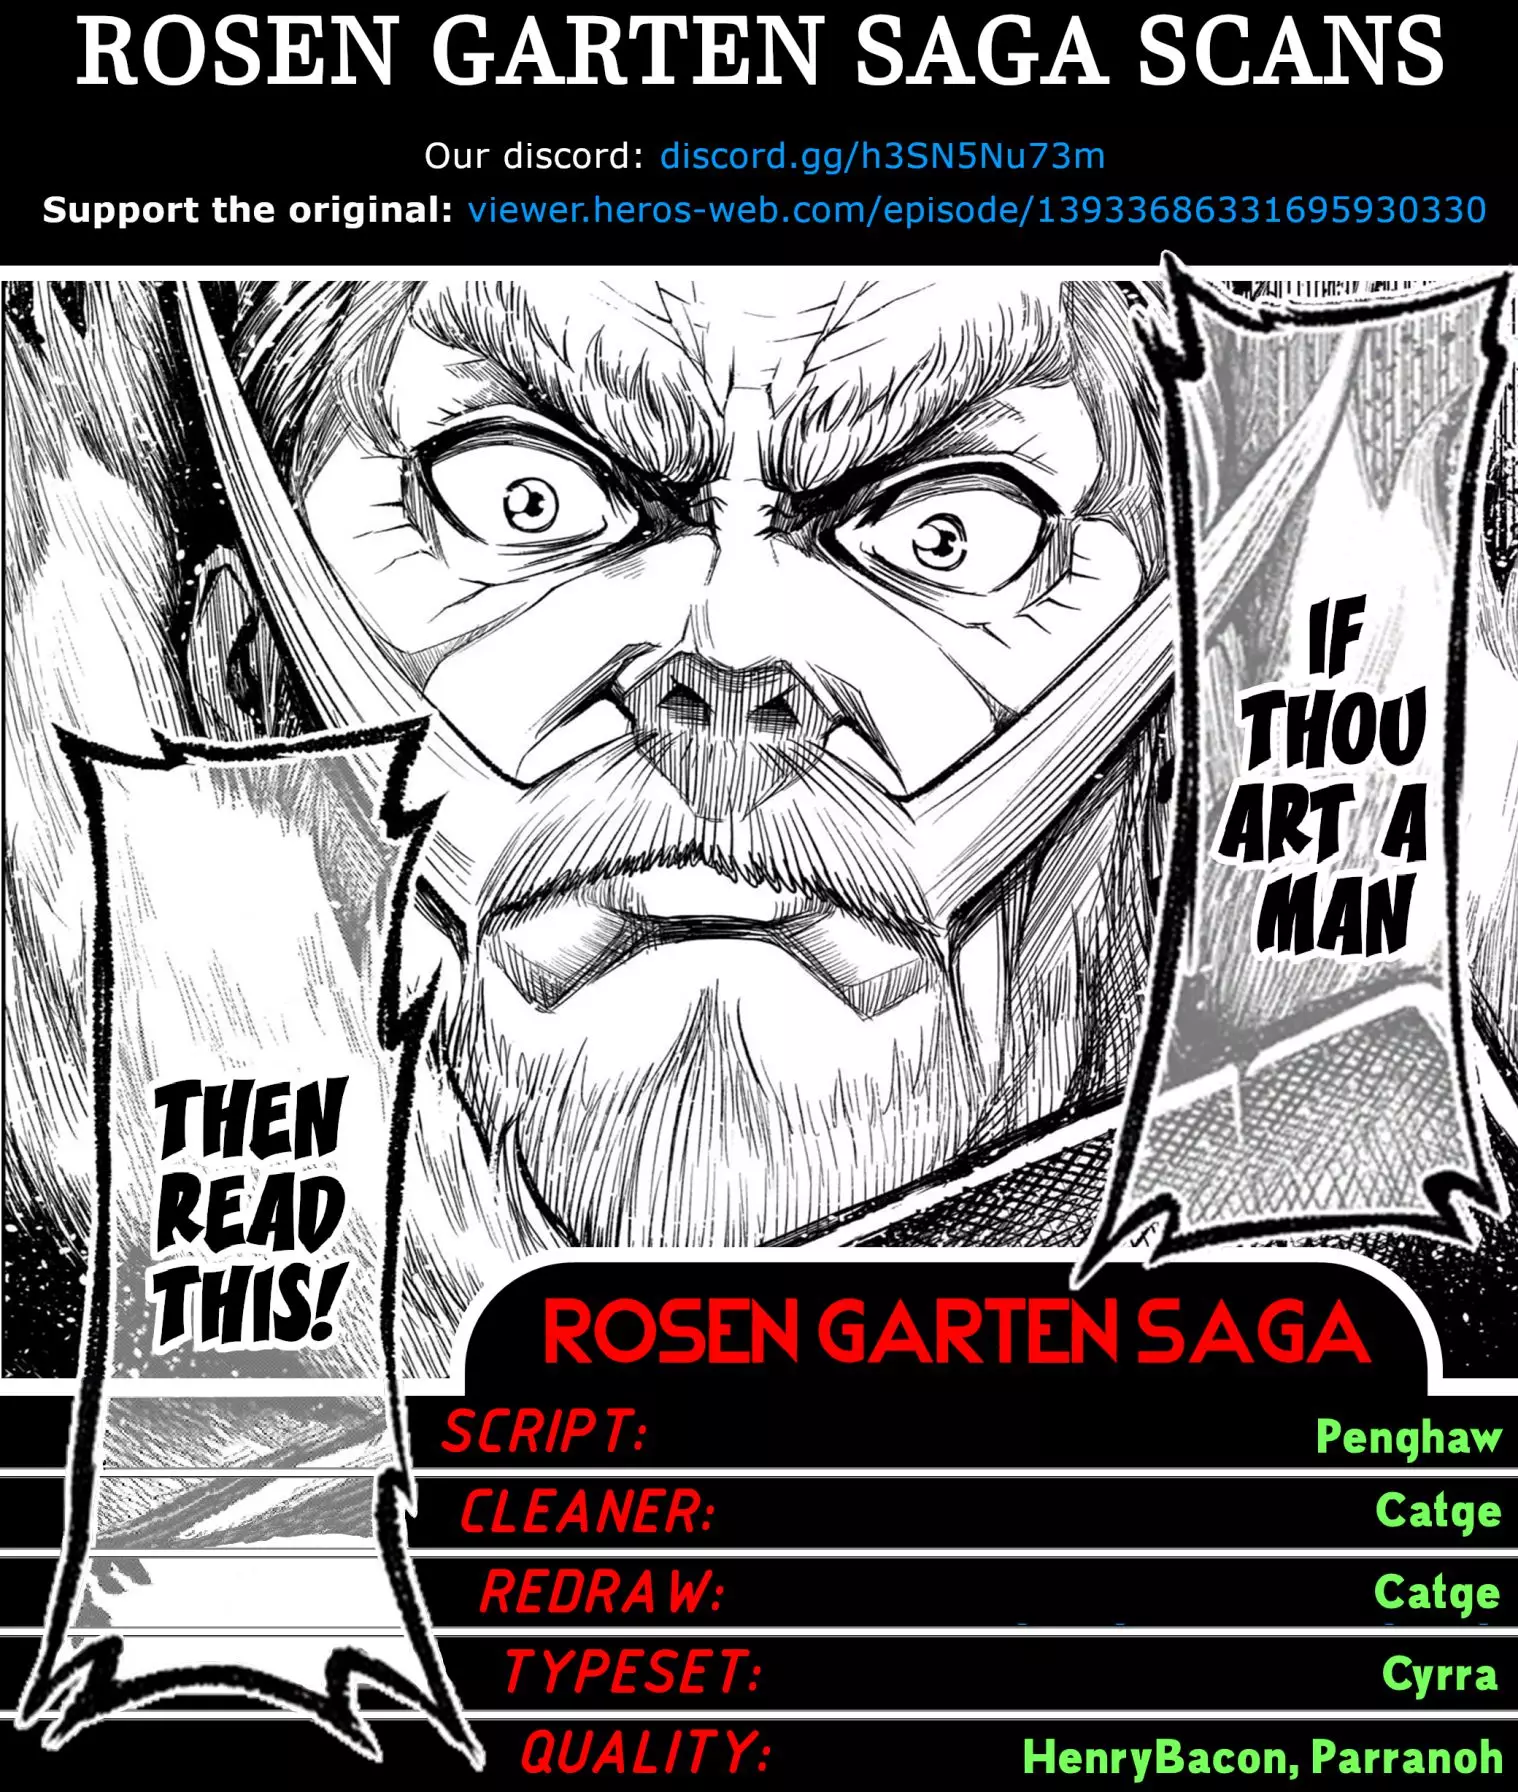 Rosen Garten Saga - 32 page 1-0ee69345